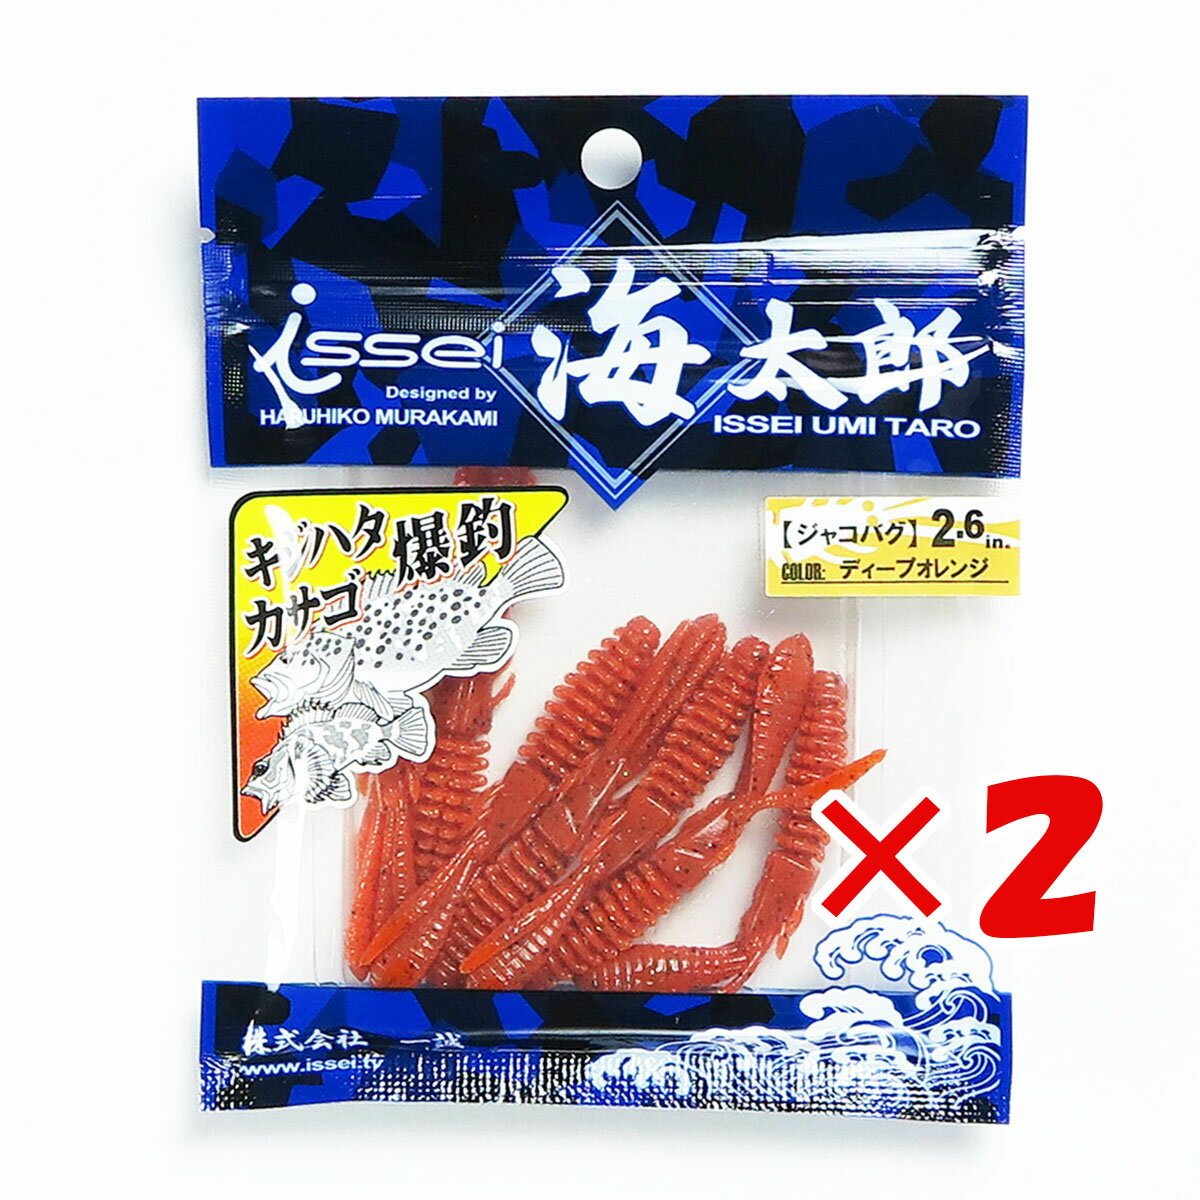  「 一誠 海太郎 Issei Umitaro ワーム ジャコバグ 2.6インチ ディープオレンジ 」  釣具 釣り具 釣り用品